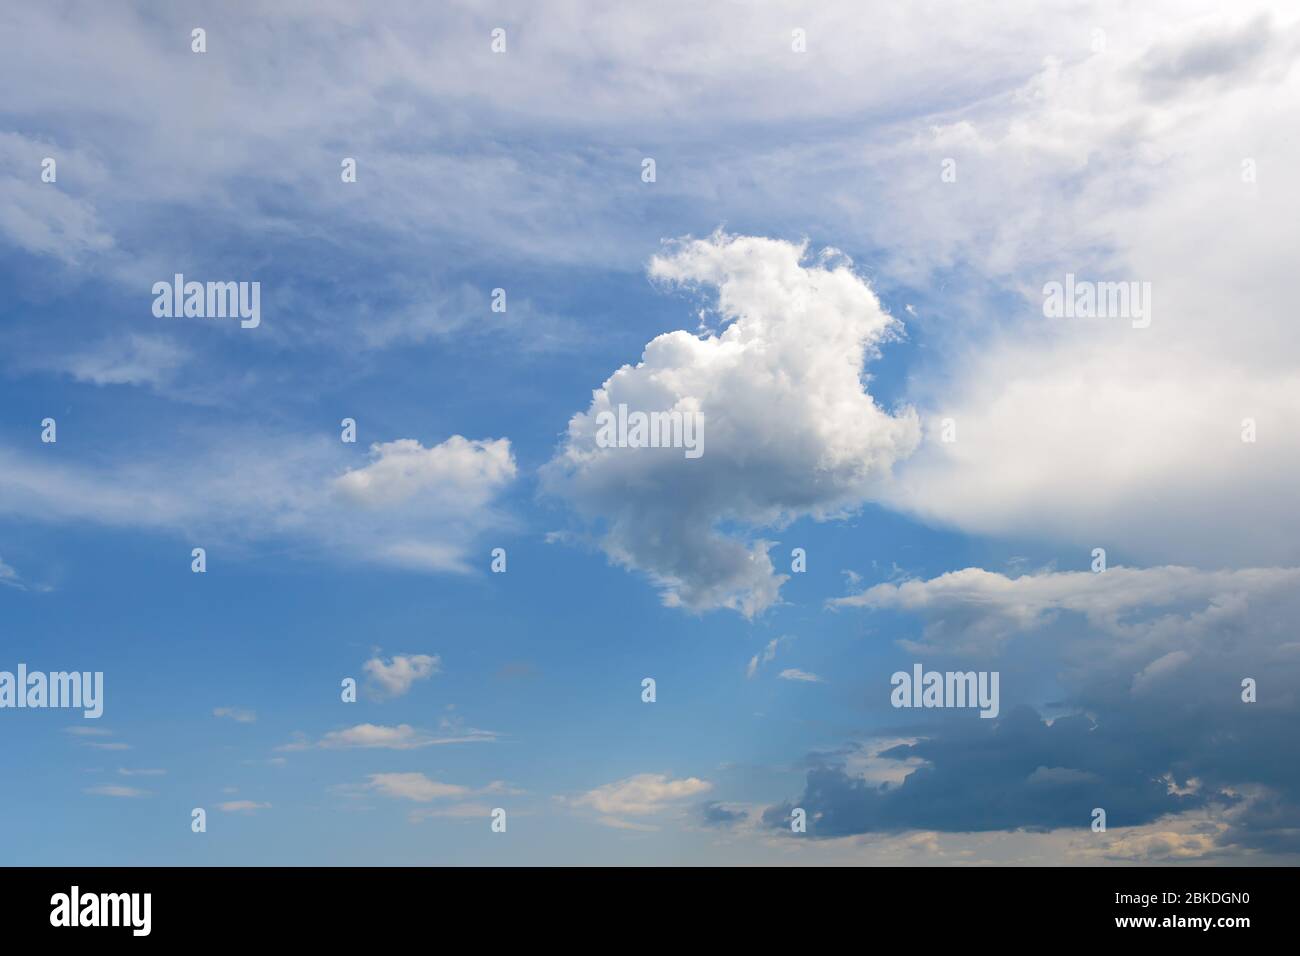 Weiße flauschige Cumulus-, stratus- und Cirrus-Wolken schweben an einem sonnigen Tag langsam hoch im blauen Himmel. Meteorologie, Wetter und verschiedene Wolkenarten Stockfoto